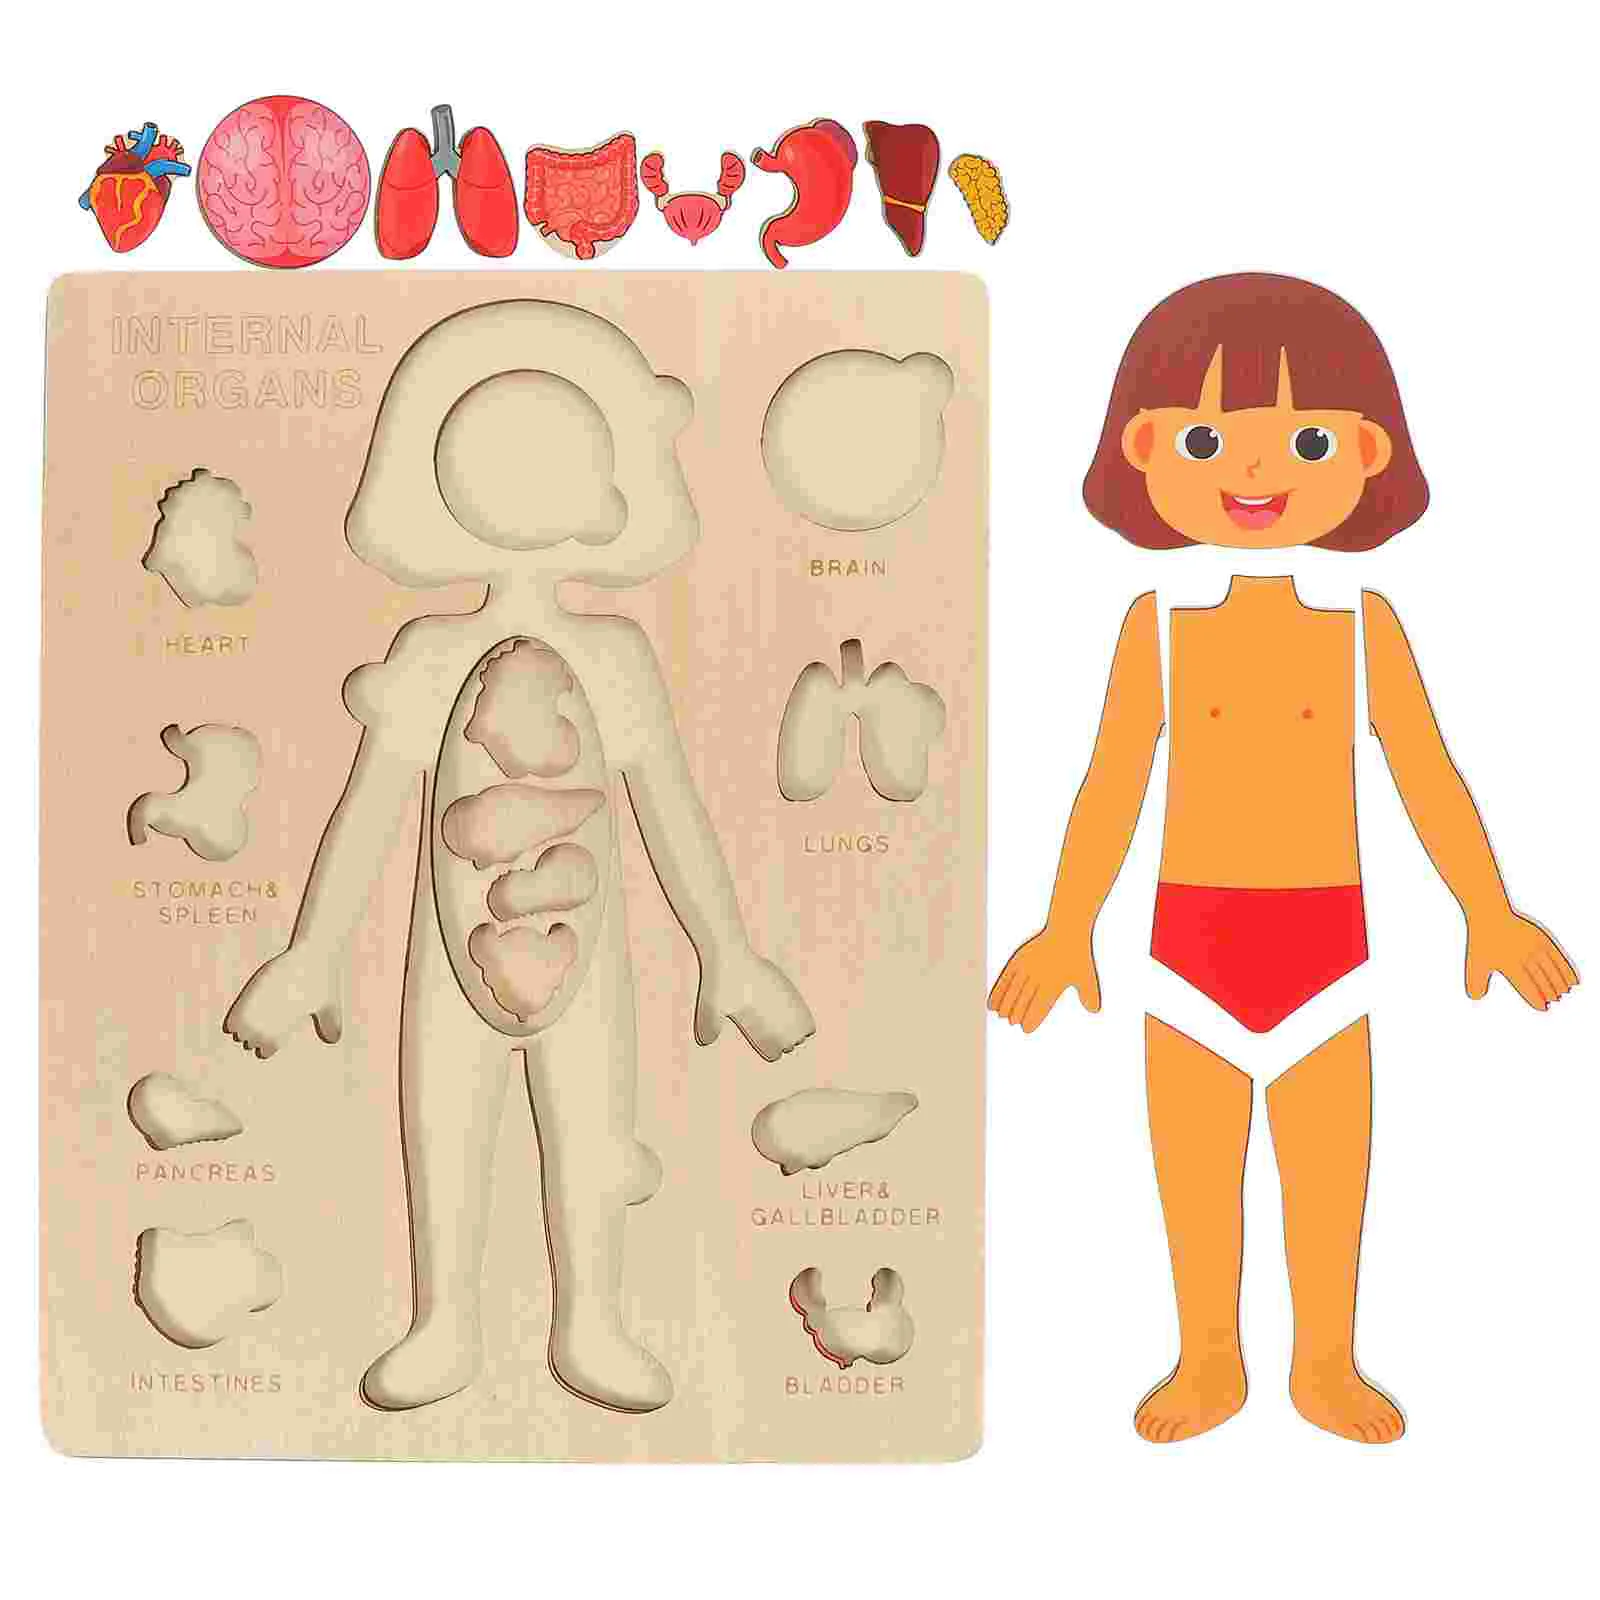 

Игрушка орган познавательная конструкция человеческого тела модели пазлов для обучения детям органов